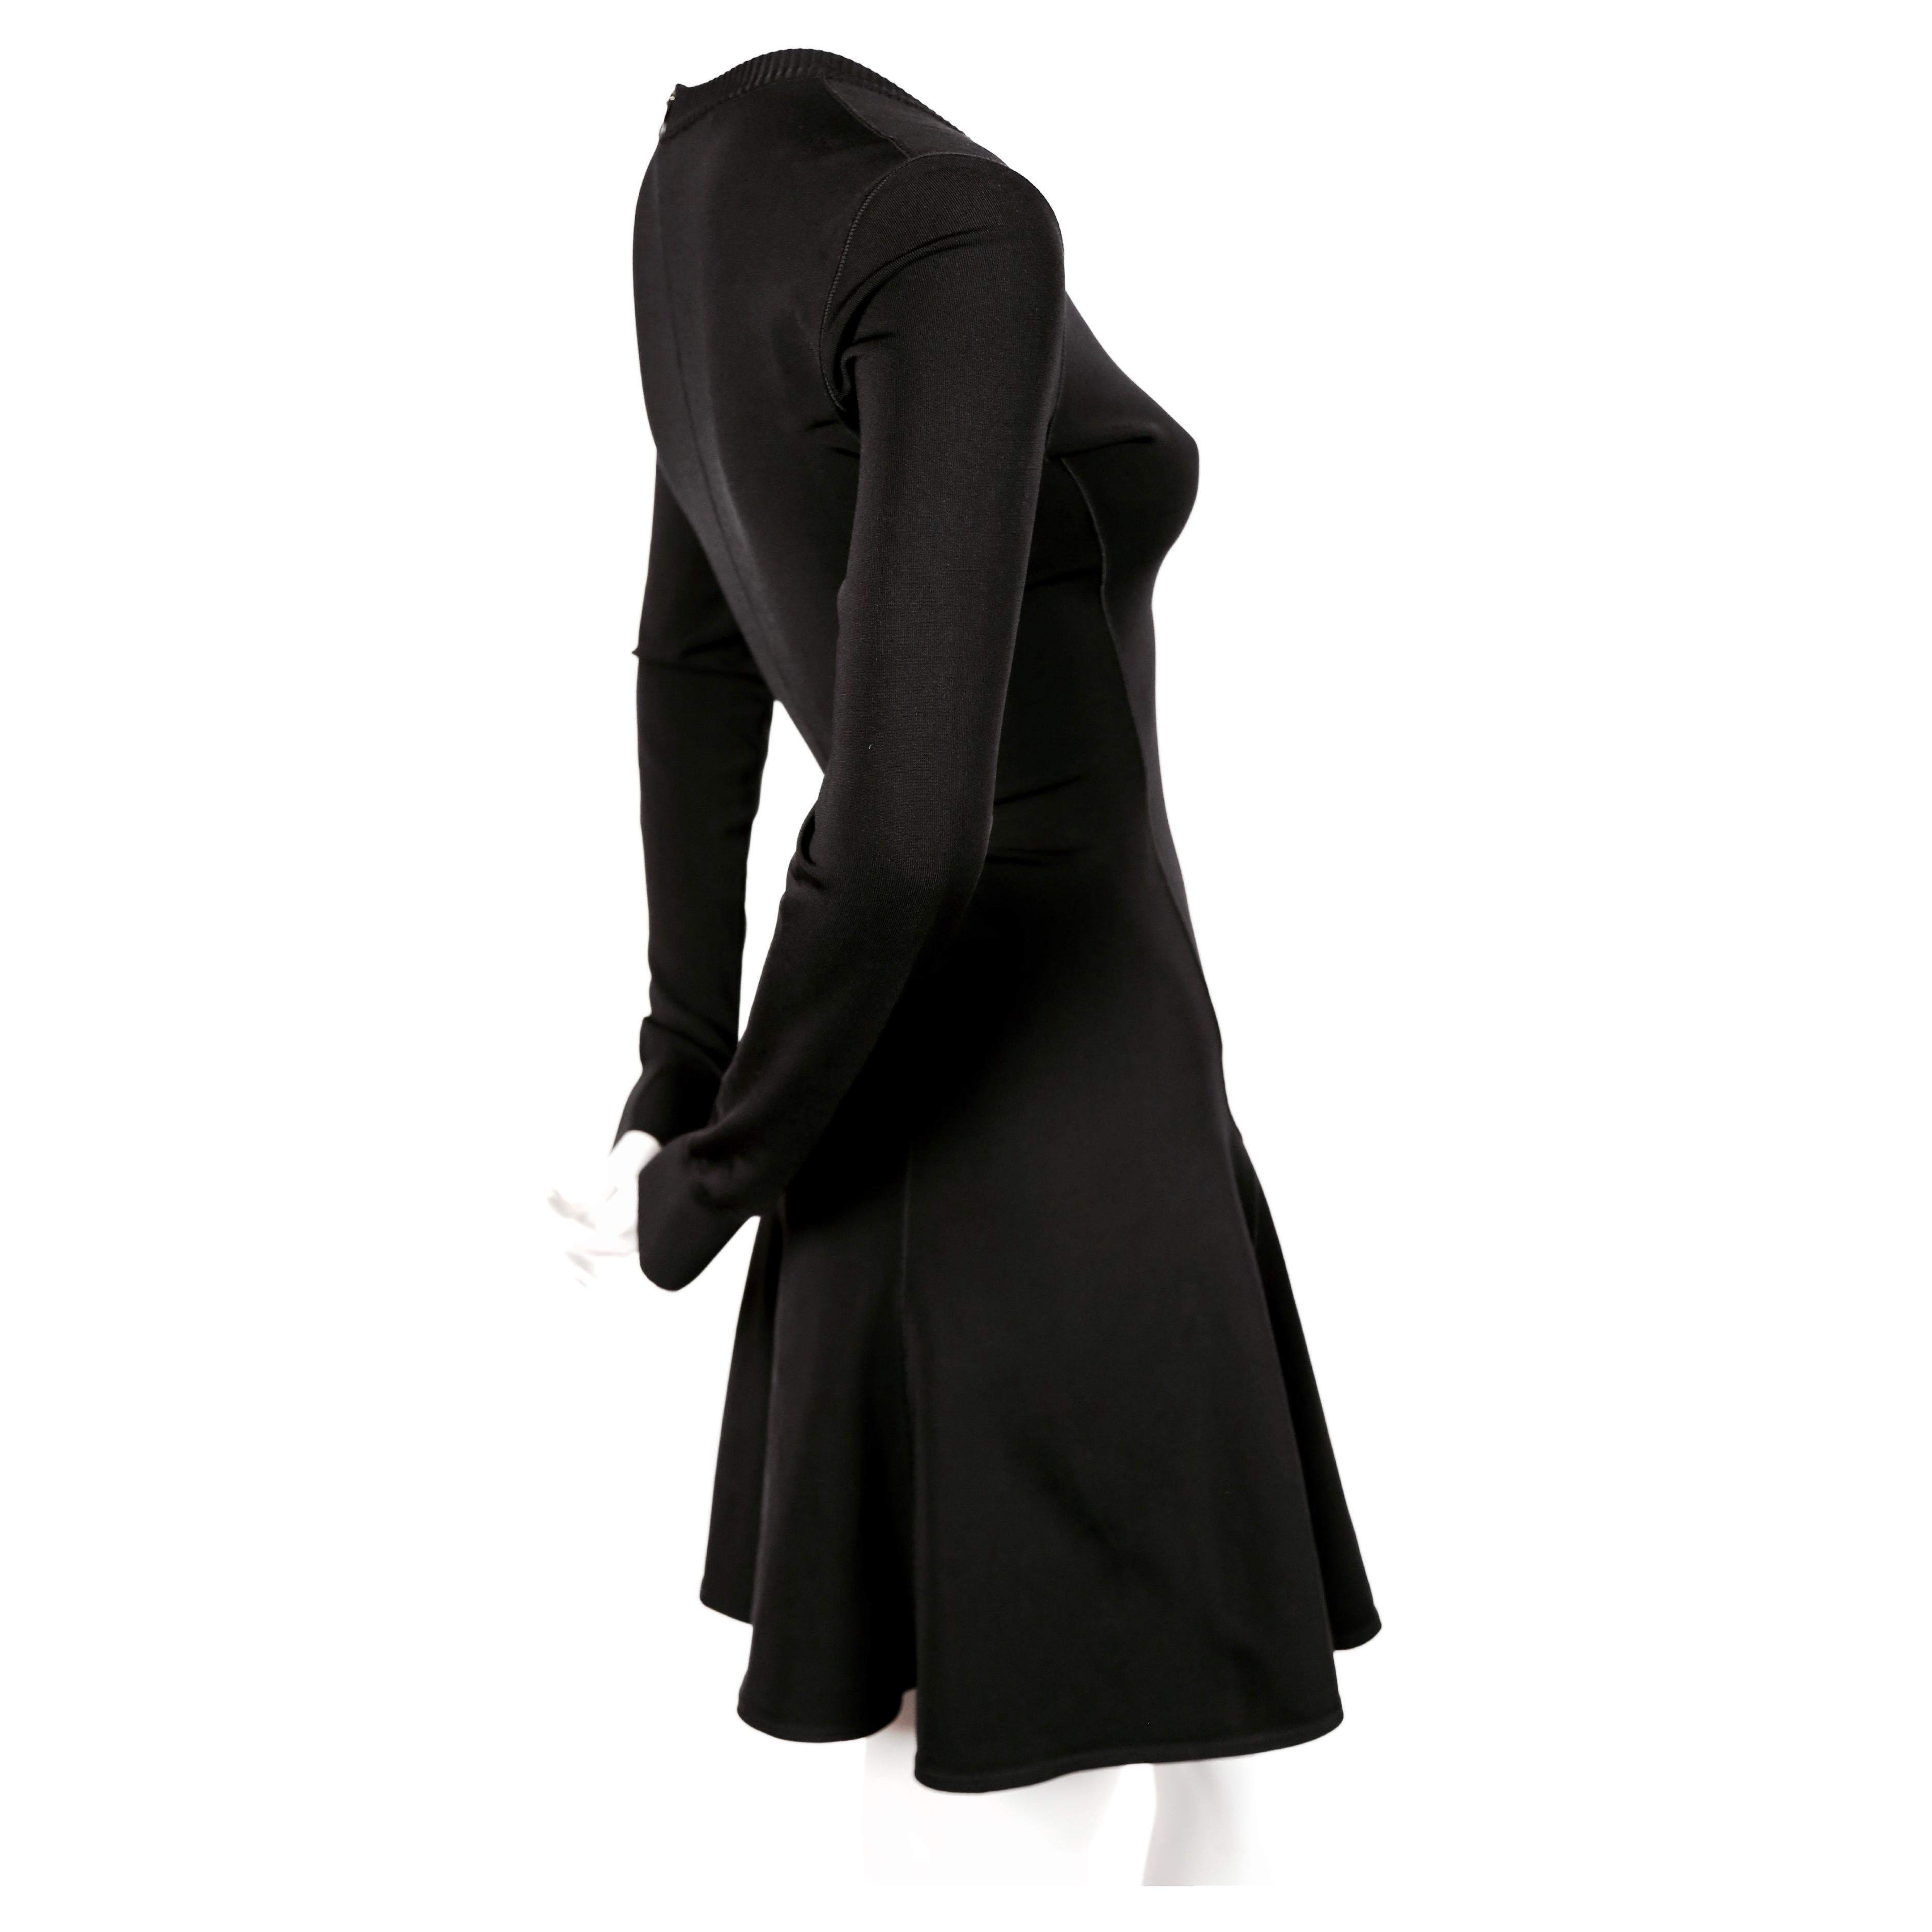 Robe patineuse noir de jais avec décolleté en V et manches longues, conçue par Azzedine Alaia et datant du début des années 1990. Taille XS. Mesures approximatives (non étiré) : épaule 14